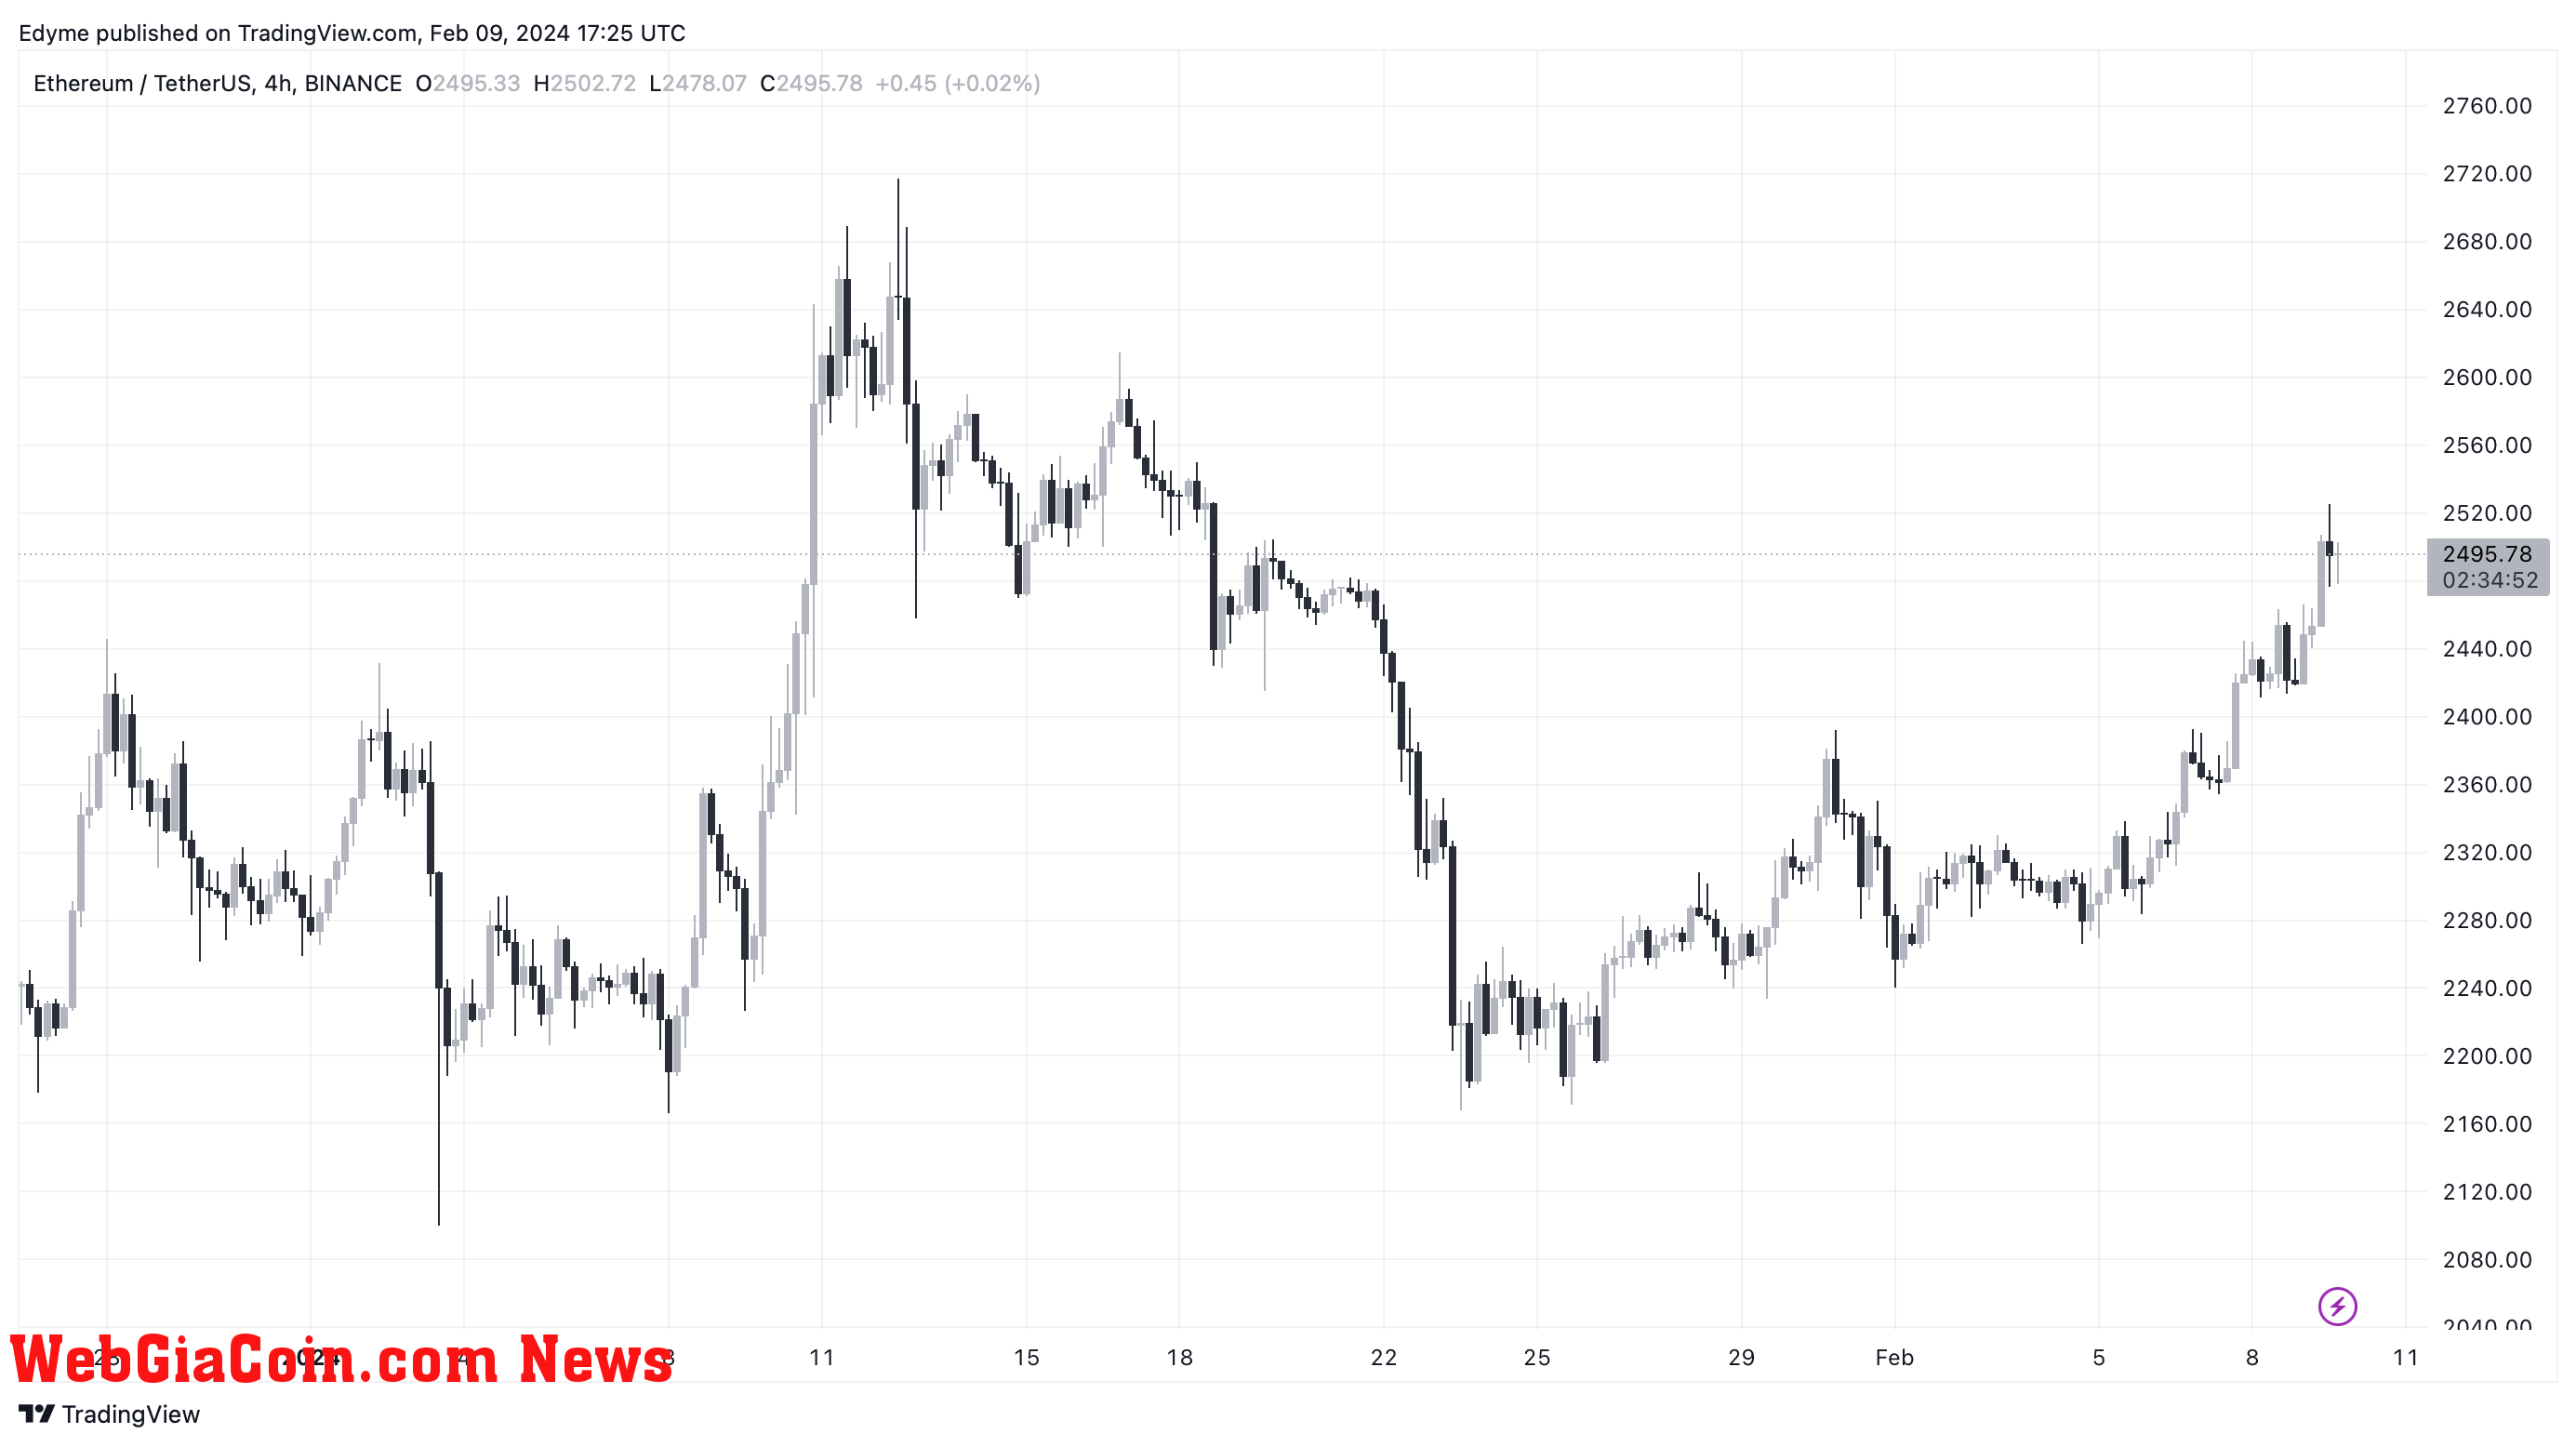 Ethereum (ETH) price chart on TradingView